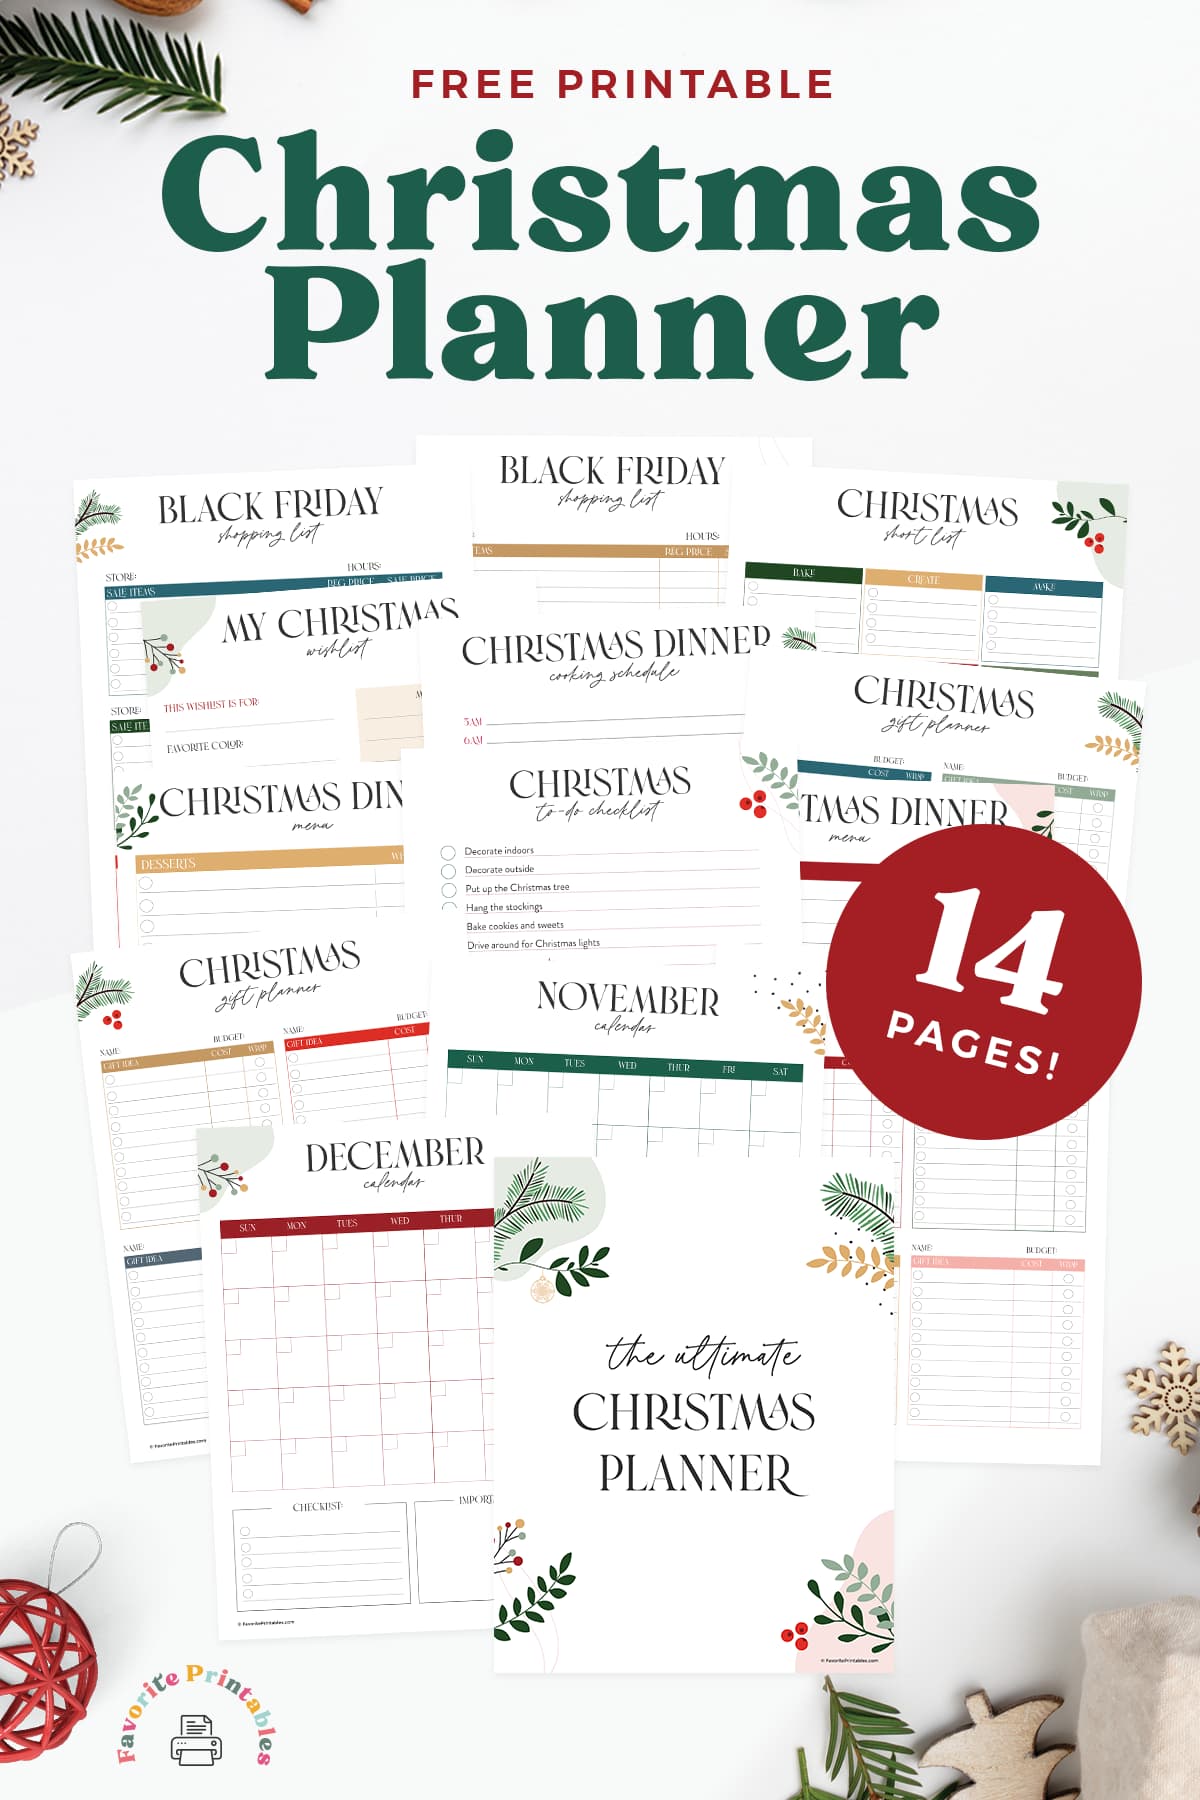 Free printable 14 page christmas planner pin.